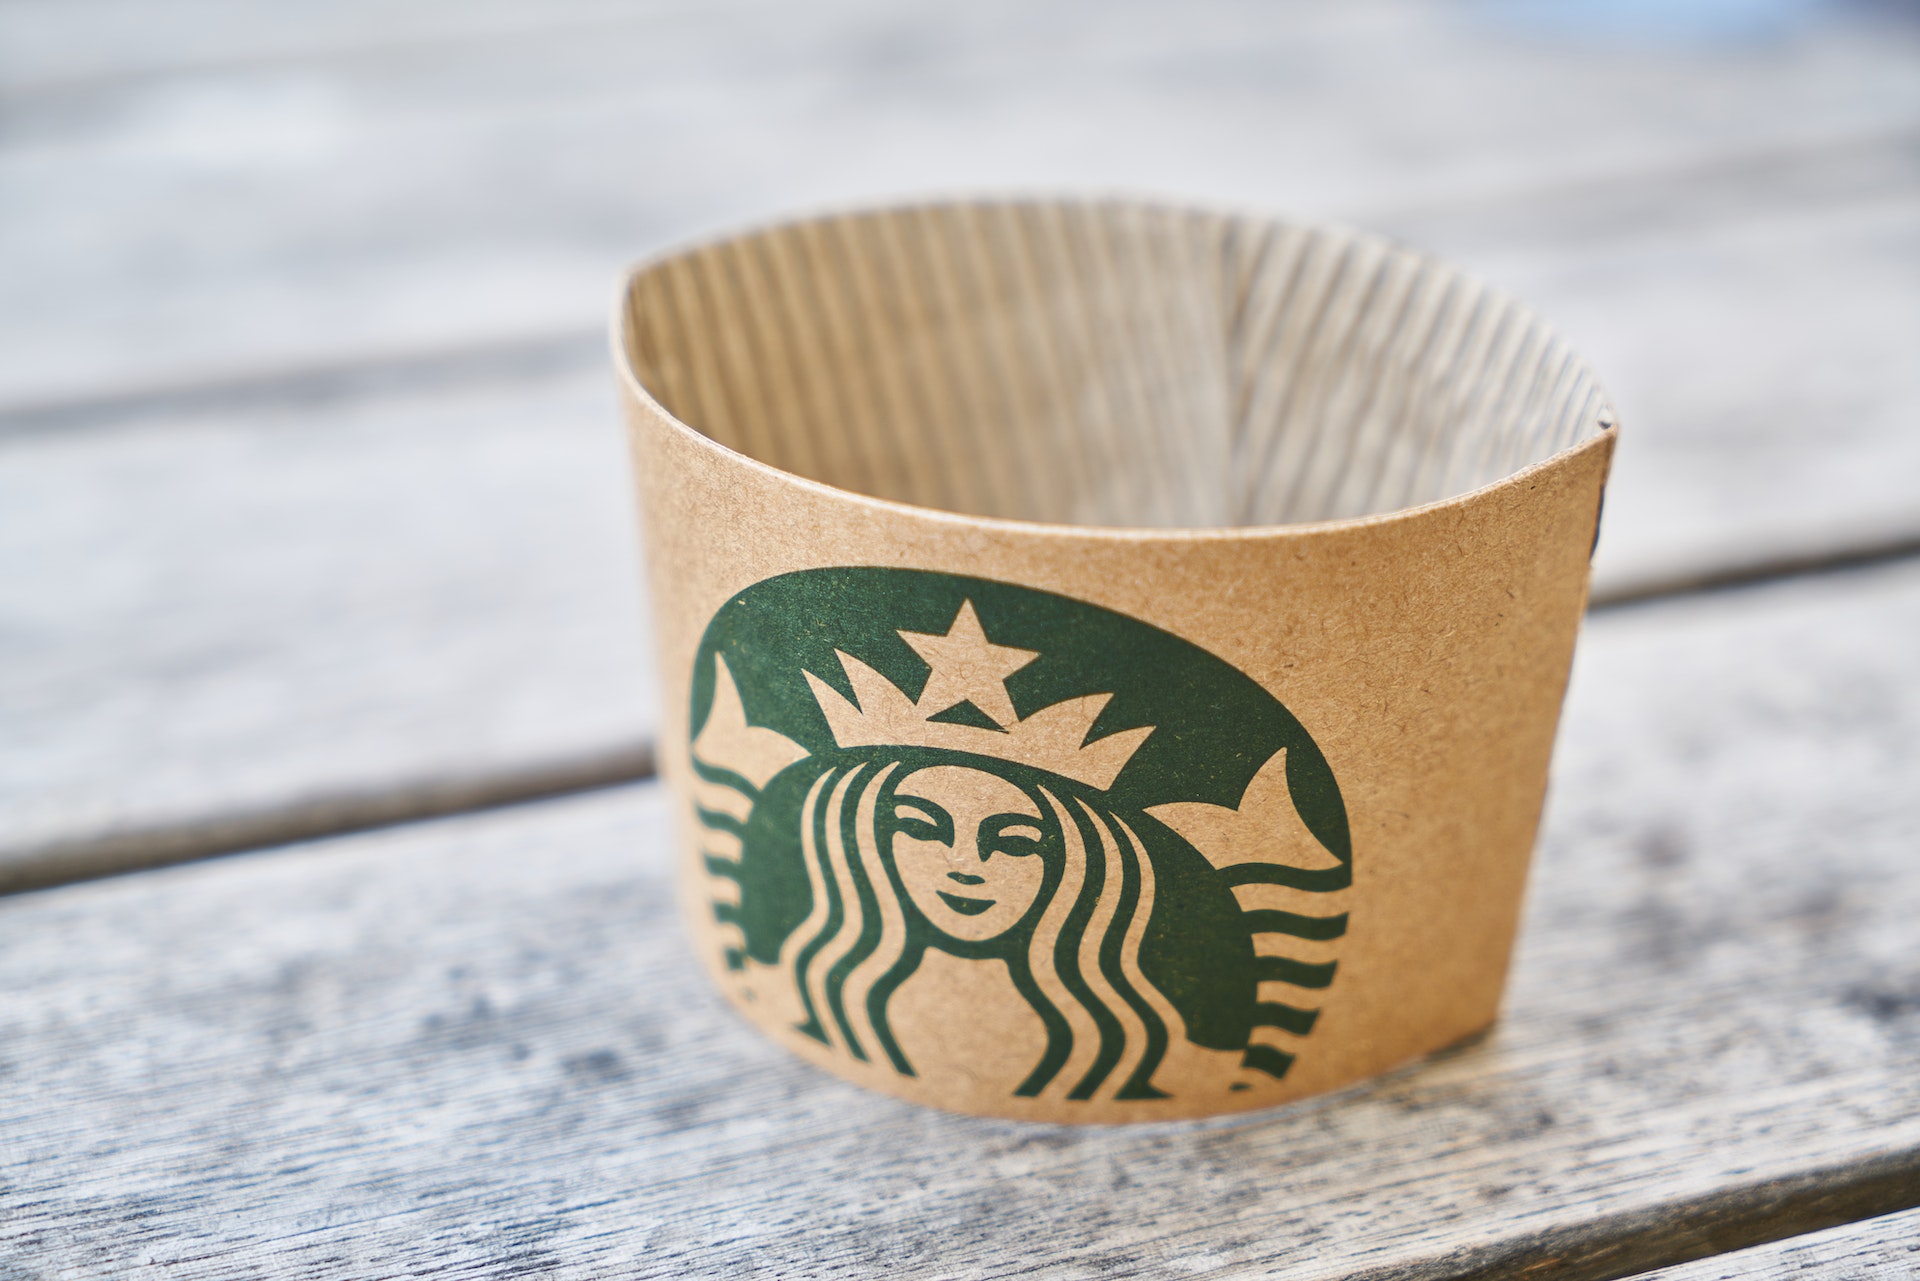 Starbucks drink holder with Starbucks logo